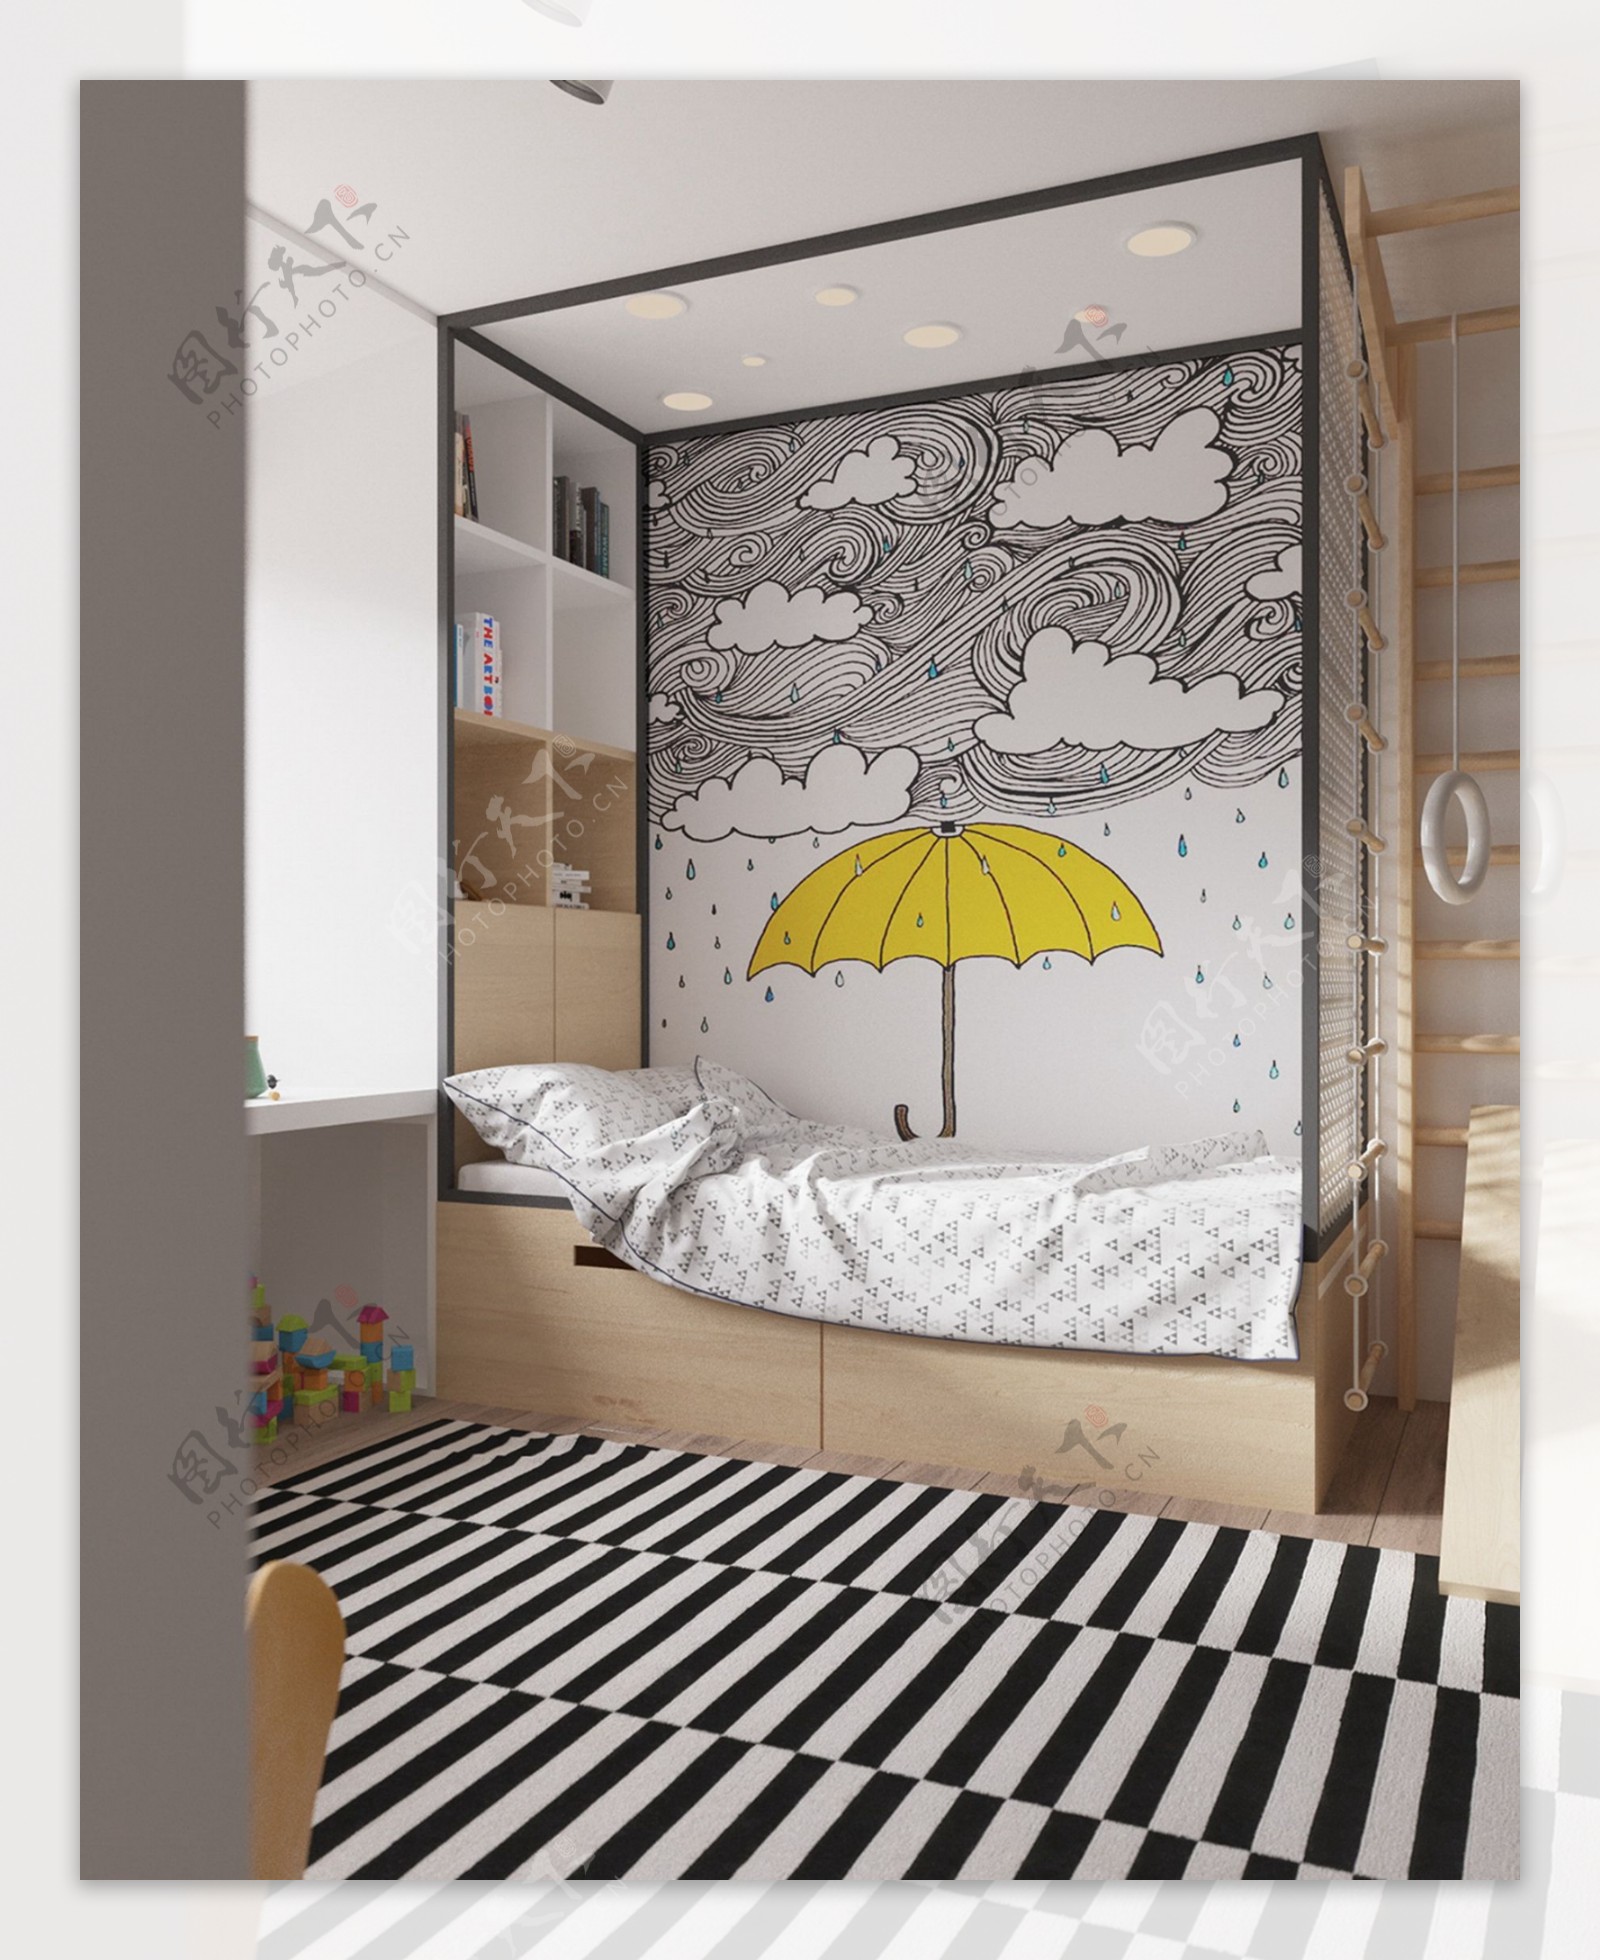 清新可爱卧室墙面彩绘室内装修效果图